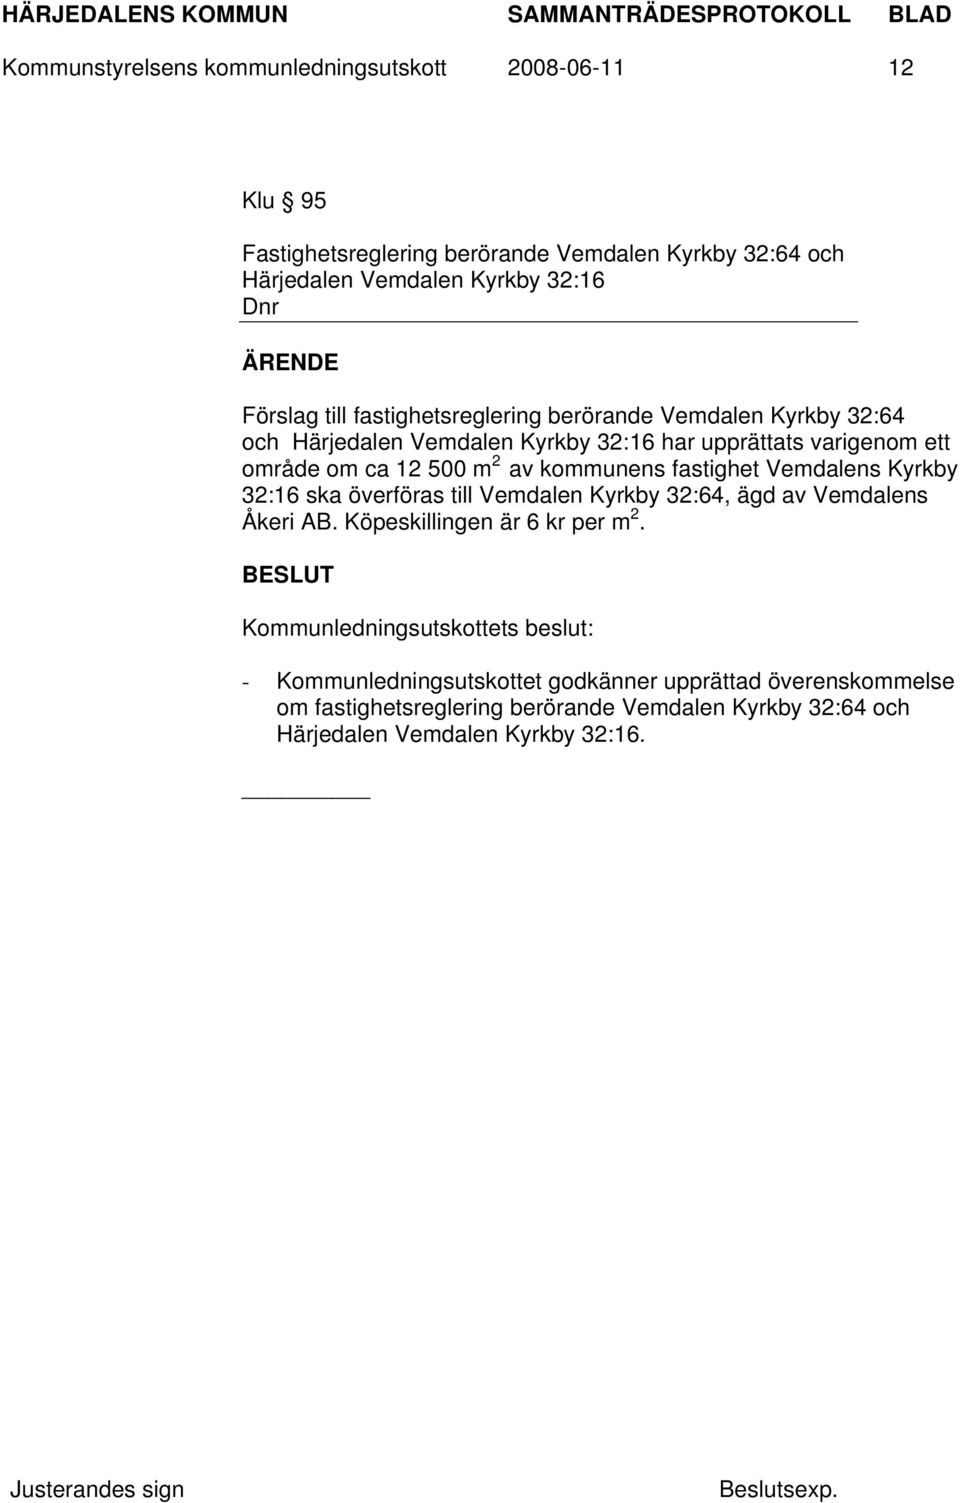 2 av kommunens fastighet Vemdalens Kyrkby 32:16 ska överföras till Vemdalen Kyrkby 32:64, ägd av Vemdalens Åkeri AB. Köpeskillingen är 6 kr per m 2.